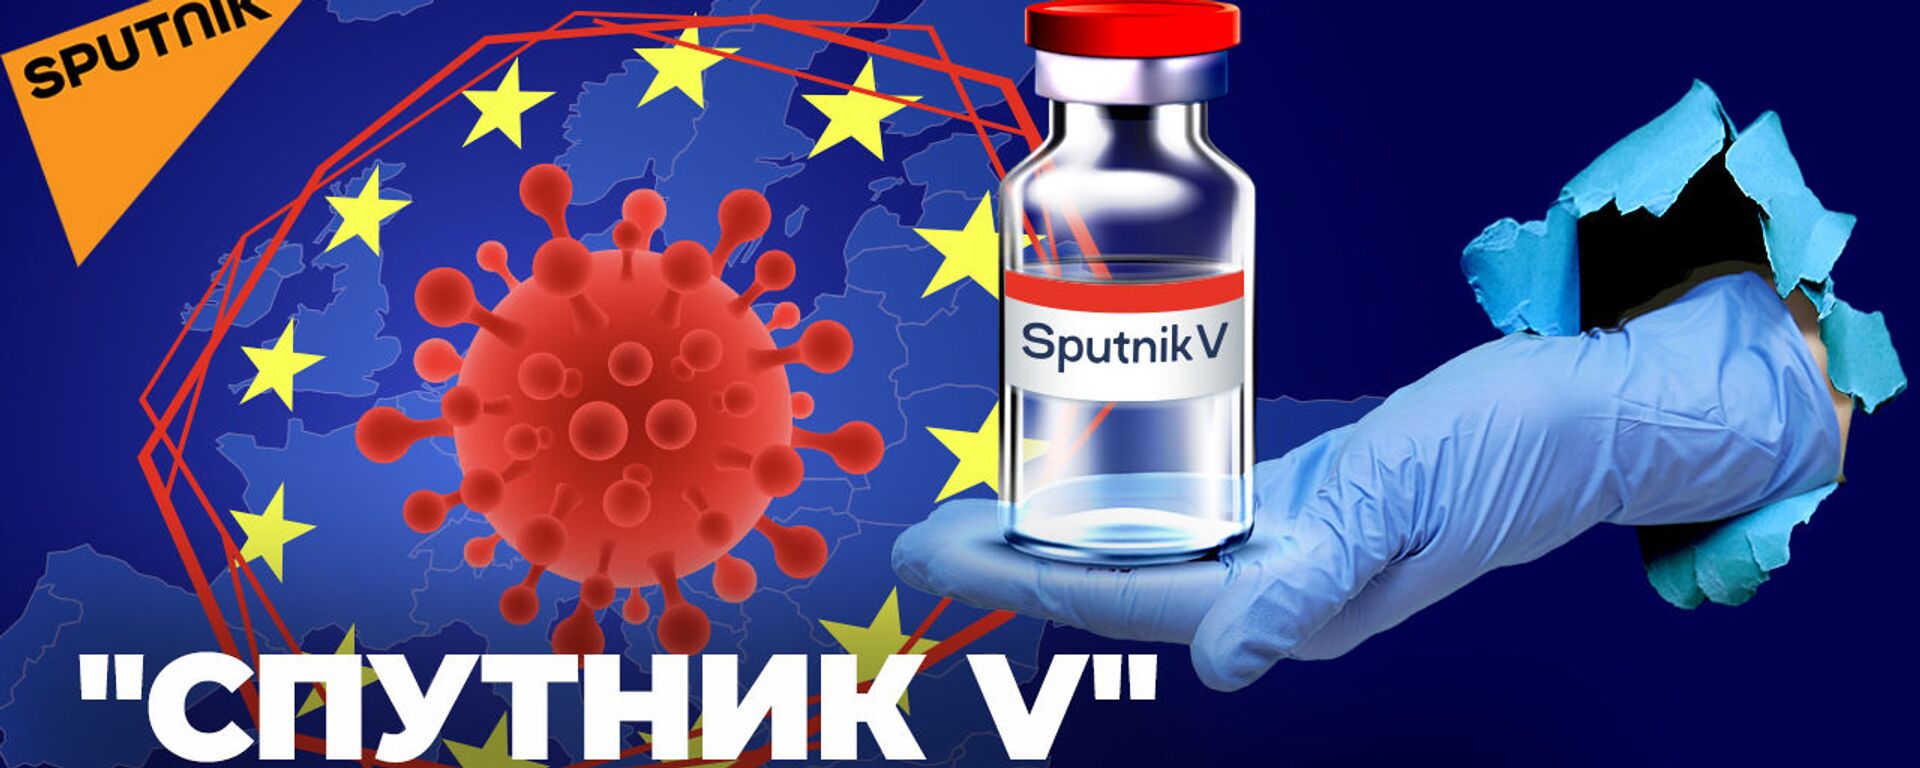 Спутник V спас европейскую страну. Теперь российскую вакцину пиарят в ООН - Sputnik Латвия, 1920, 11.05.2021